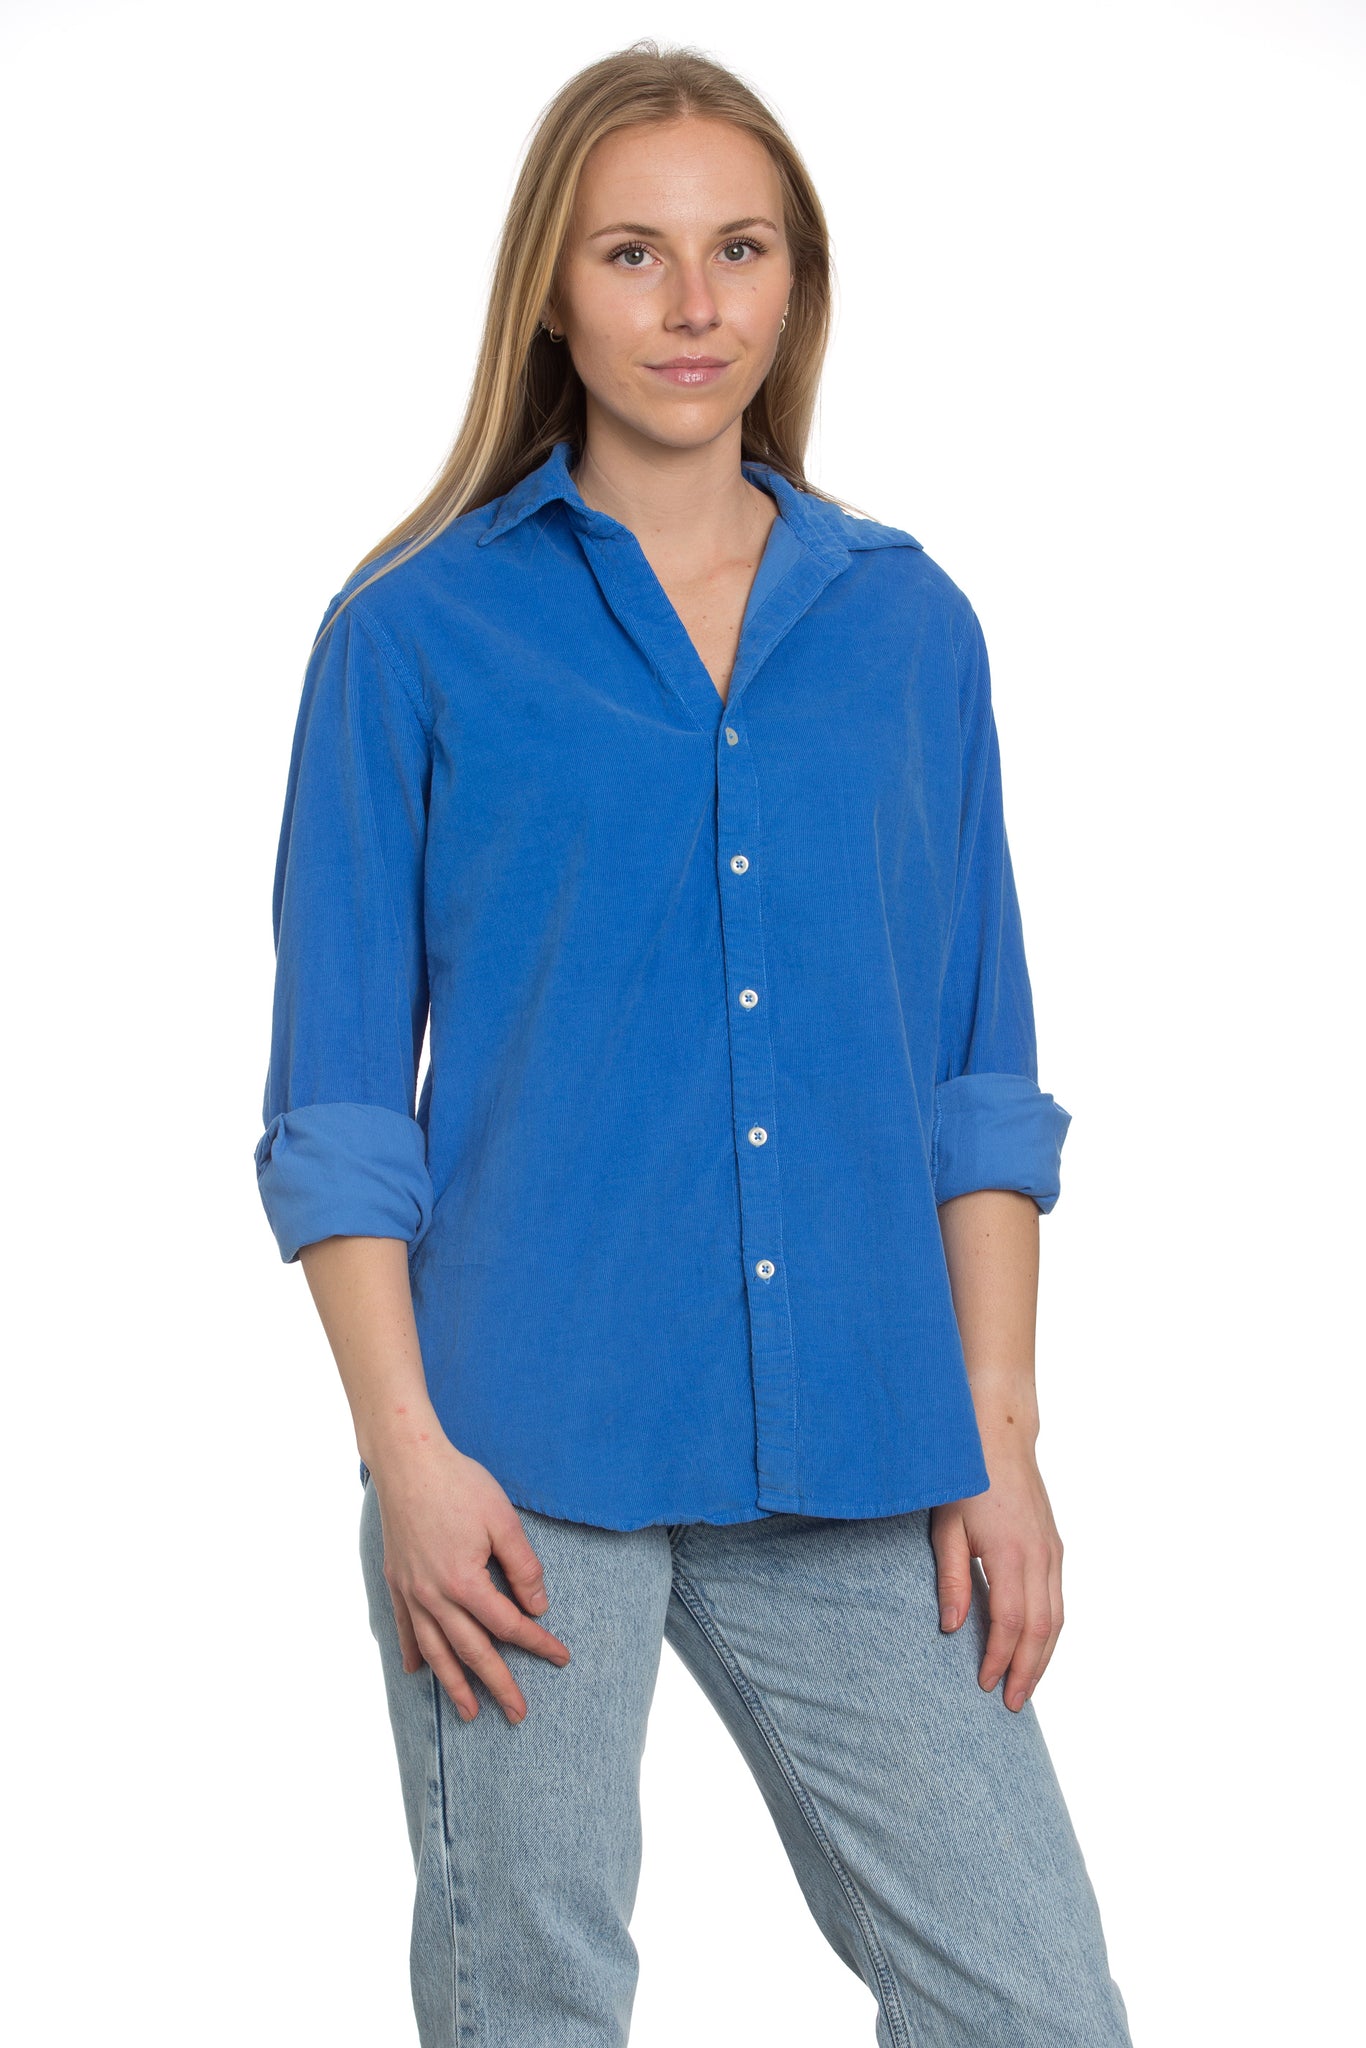 Summerland Blue Cord Shirt